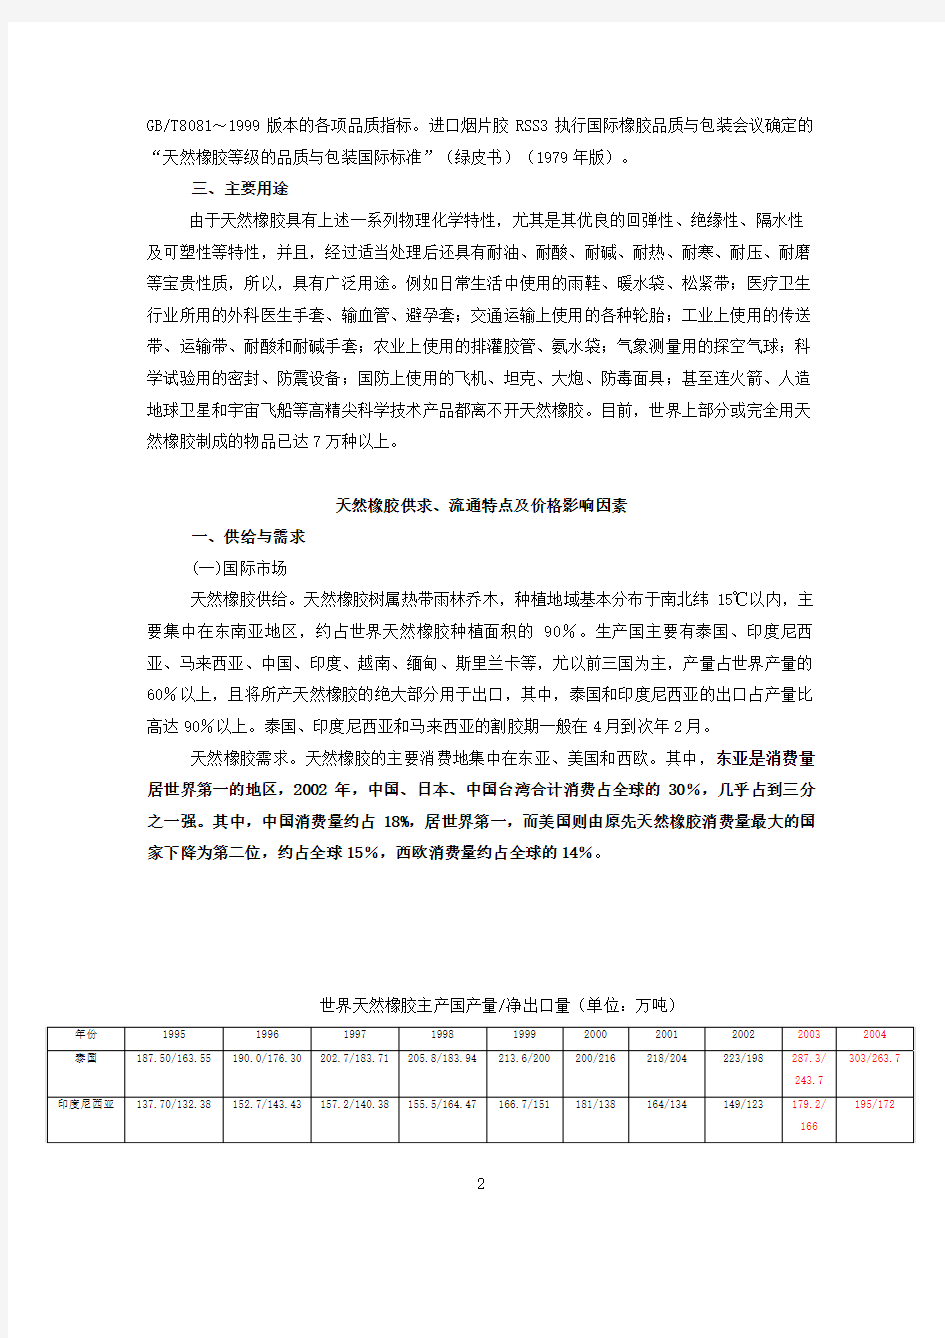 上海期货交易所 天然橡胶期货合约交易操作手册